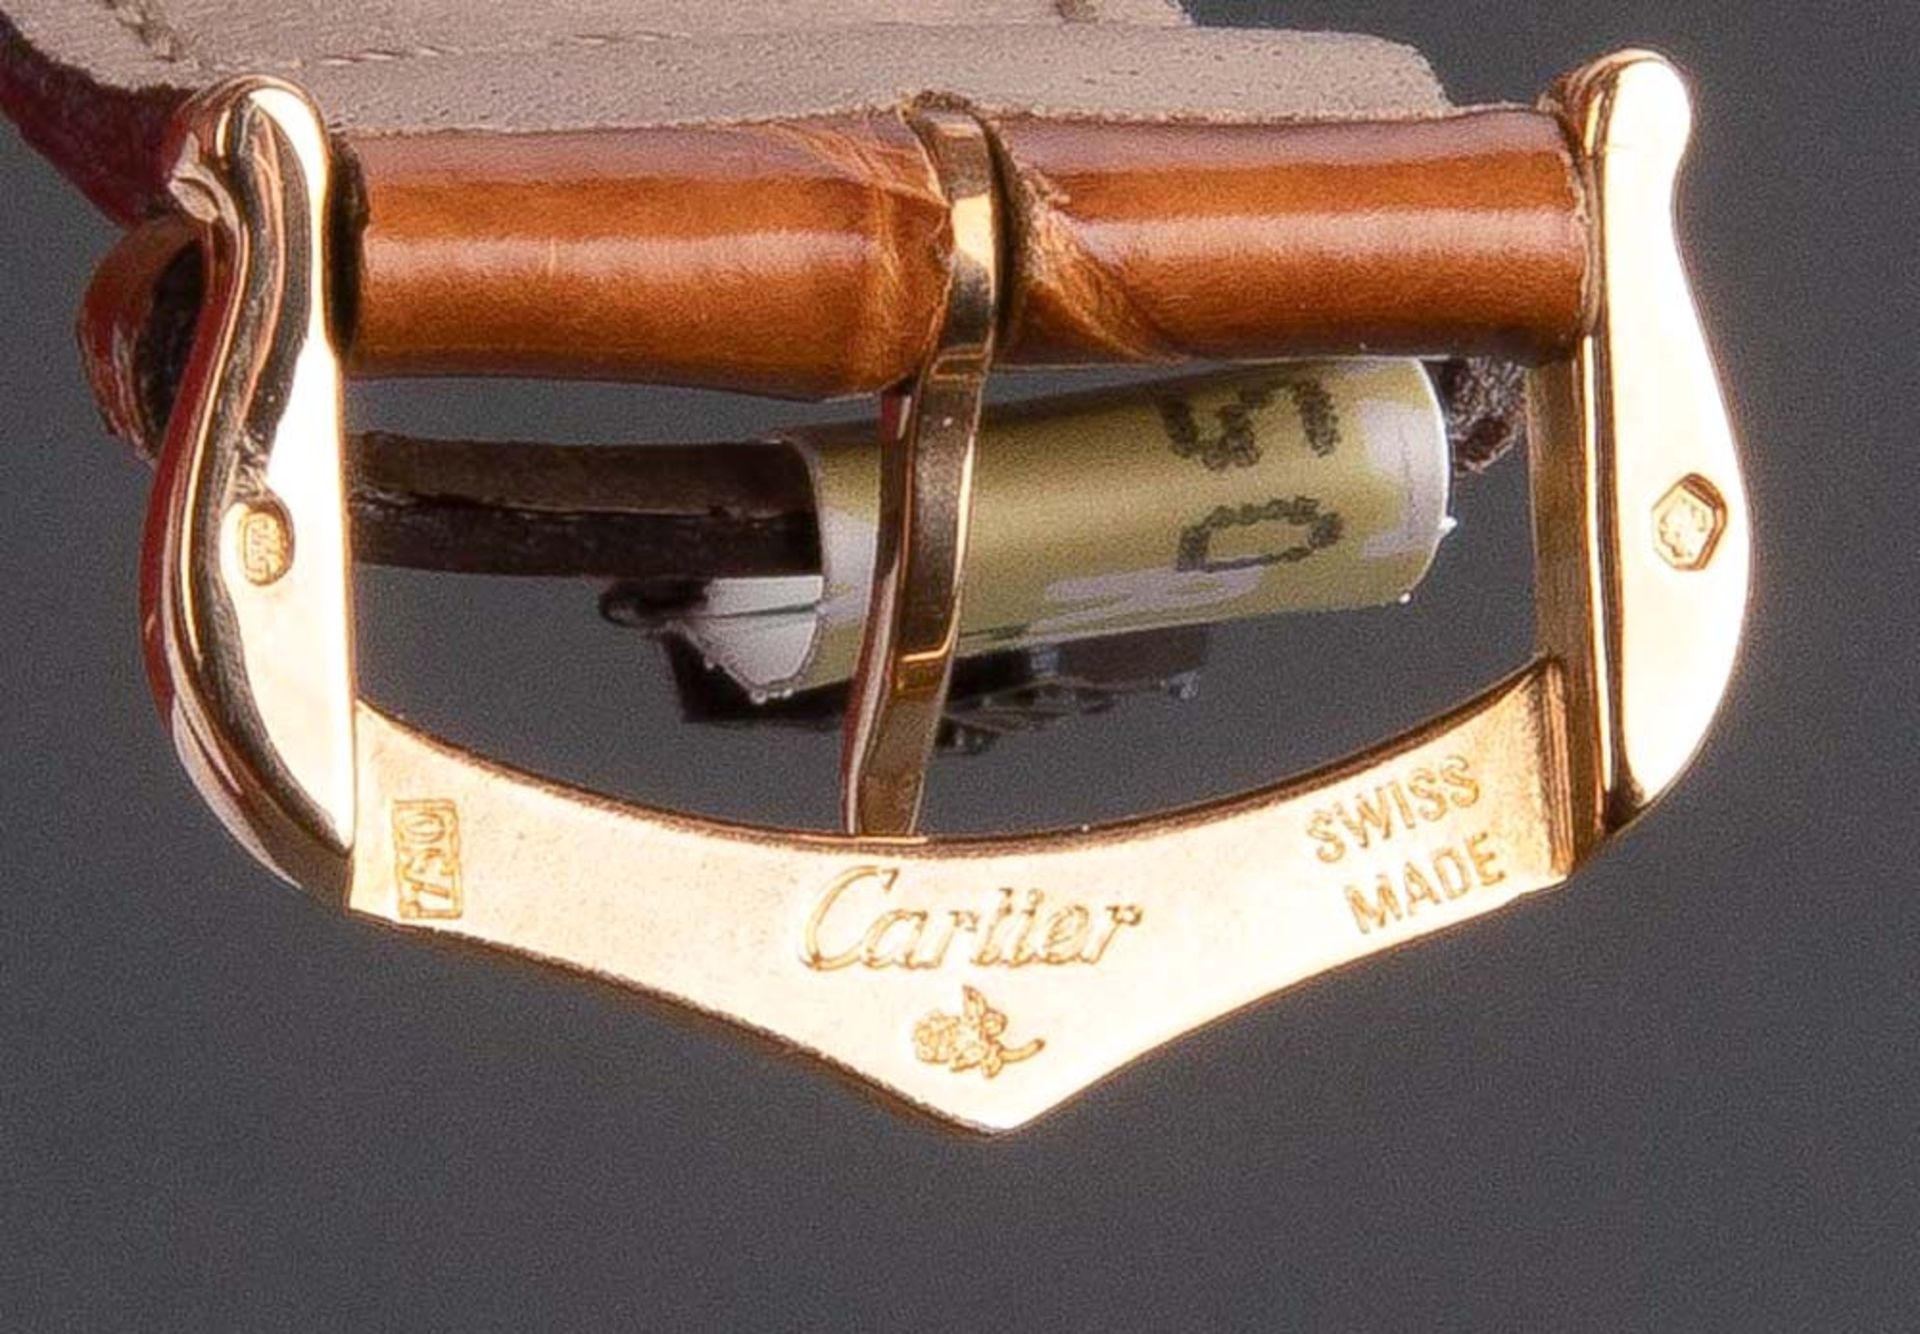 Armbanduhr, Marke „Cartier“, Nr. „100303LX“ und „2441“. 18 ct Gelbgoldgehäuse, mit Lederarmband. - Bild 3 aus 3